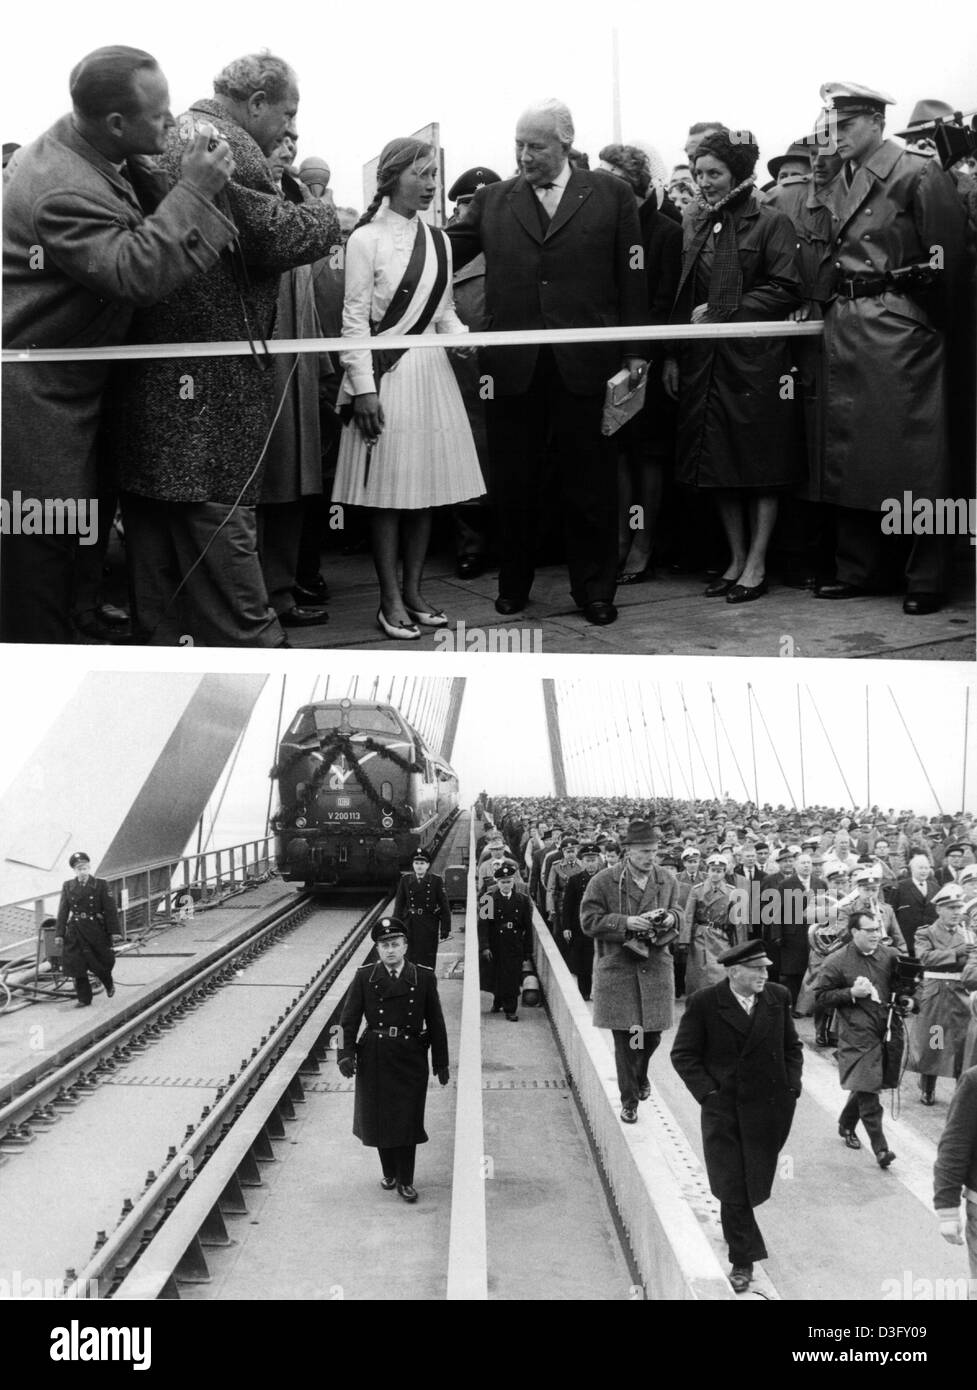 Die Fehmanrsundbrücke - Brücke -, die dem Festland und der Insel Fehmarn über das Batlic Meer verbindet wurde offiziell am 30. April 1963 eröffnet. Ein junges Mädchen schneidet das weiße Band und das untere Bild zeigt die Ehrengäste der Brücke. Stockfoto